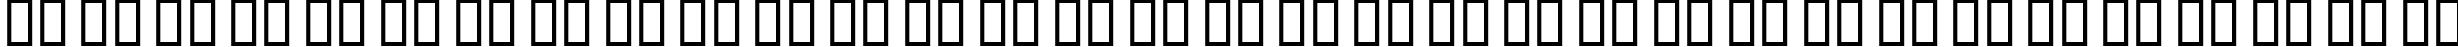 Пример написания русского алфавита шрифтом Boomerang